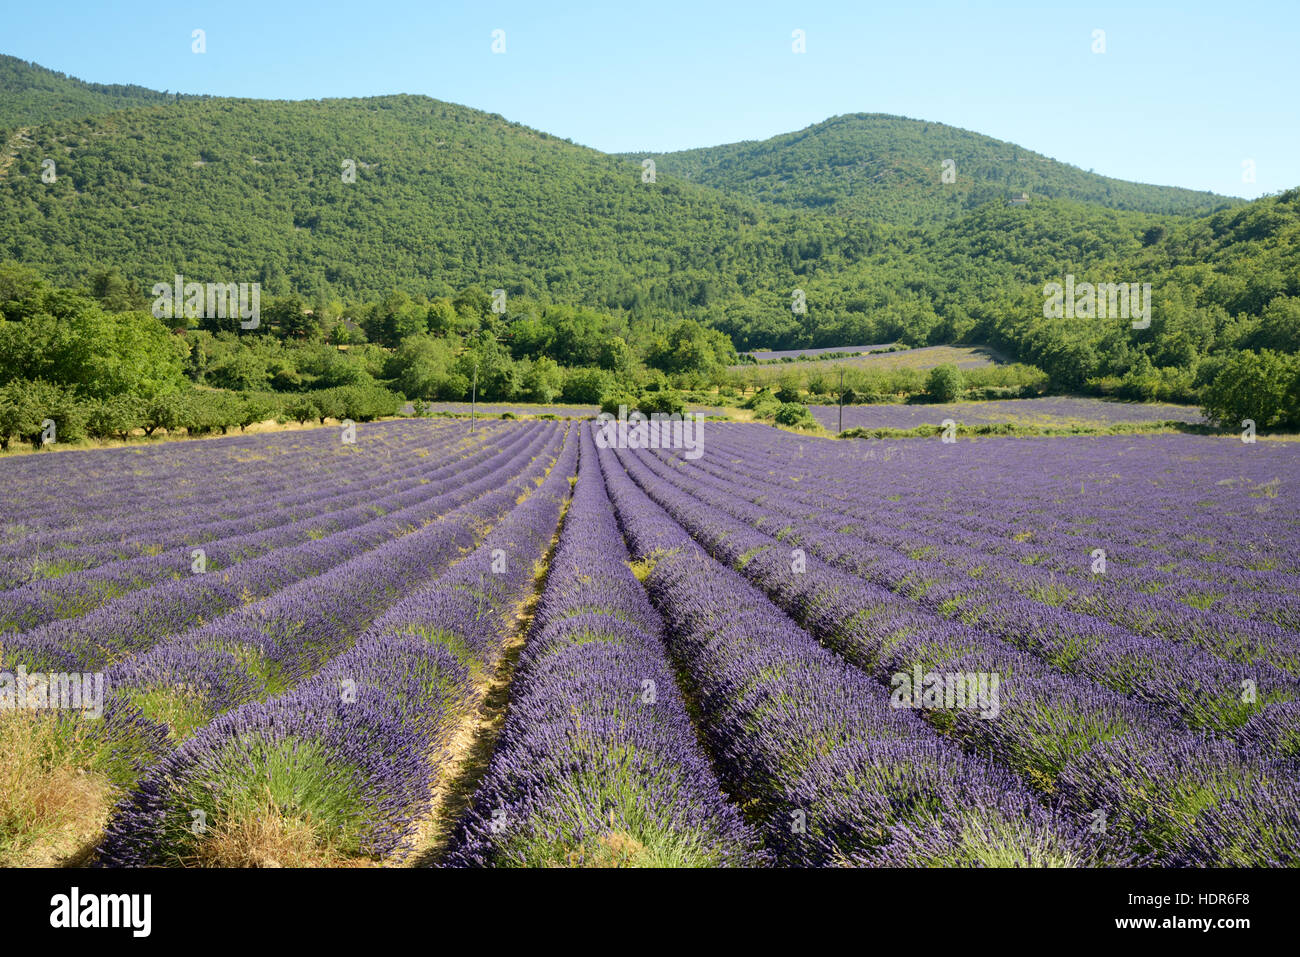 Les lignes de champ et de Lavande avec les collines boisées du parc Régional du Luberon Provence France Banque D'Images